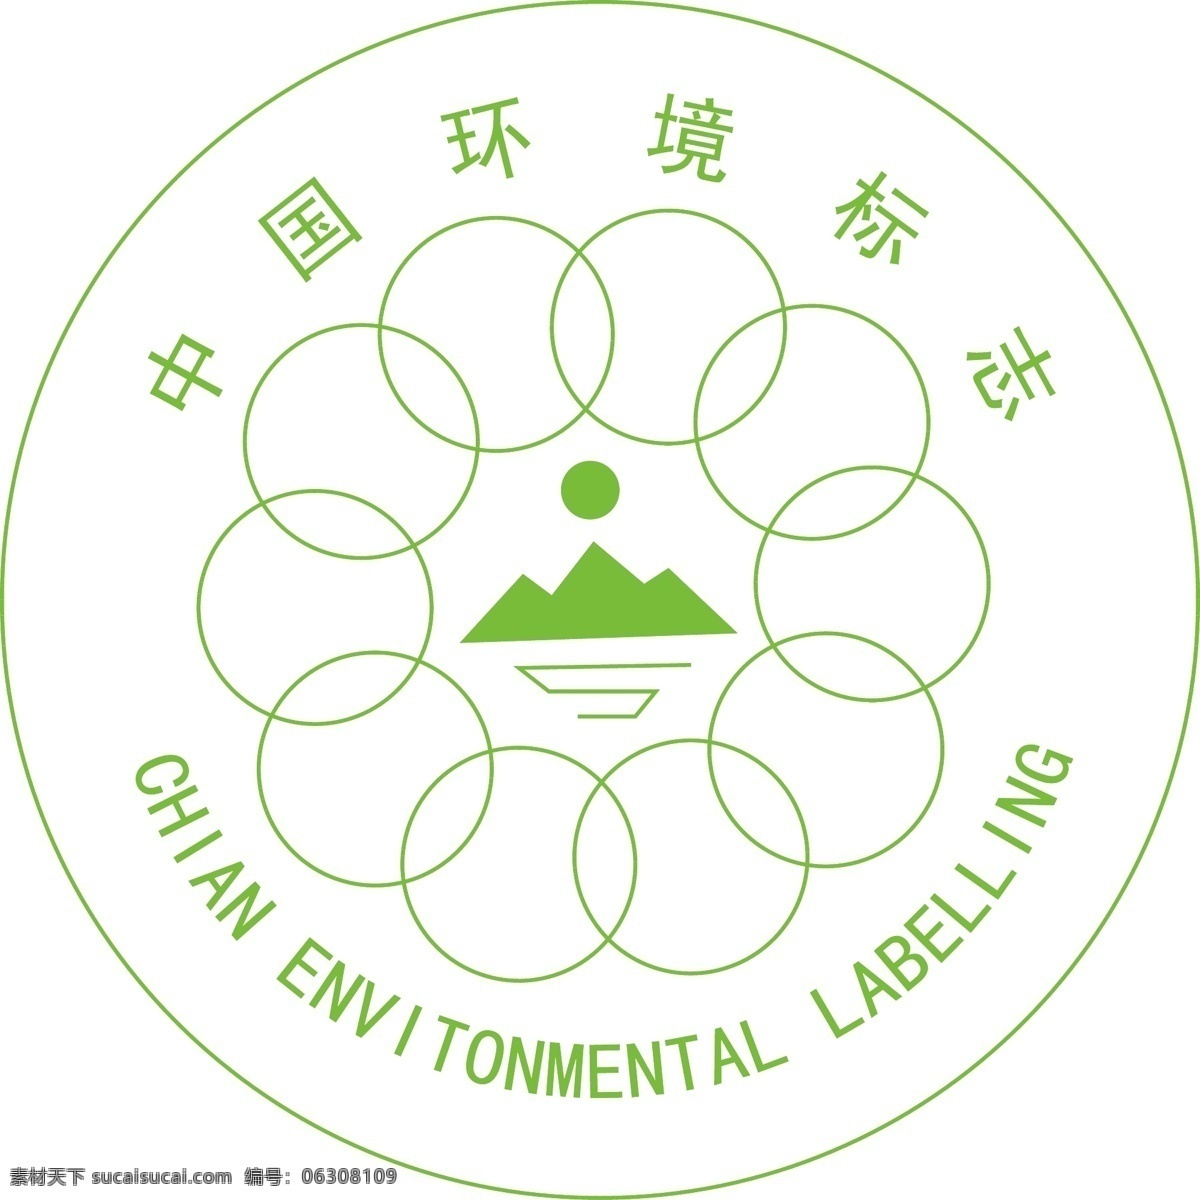 中国 环境标志 logo logo标志 logo图标 标志 中国环境标志 矢量图 其他矢量图